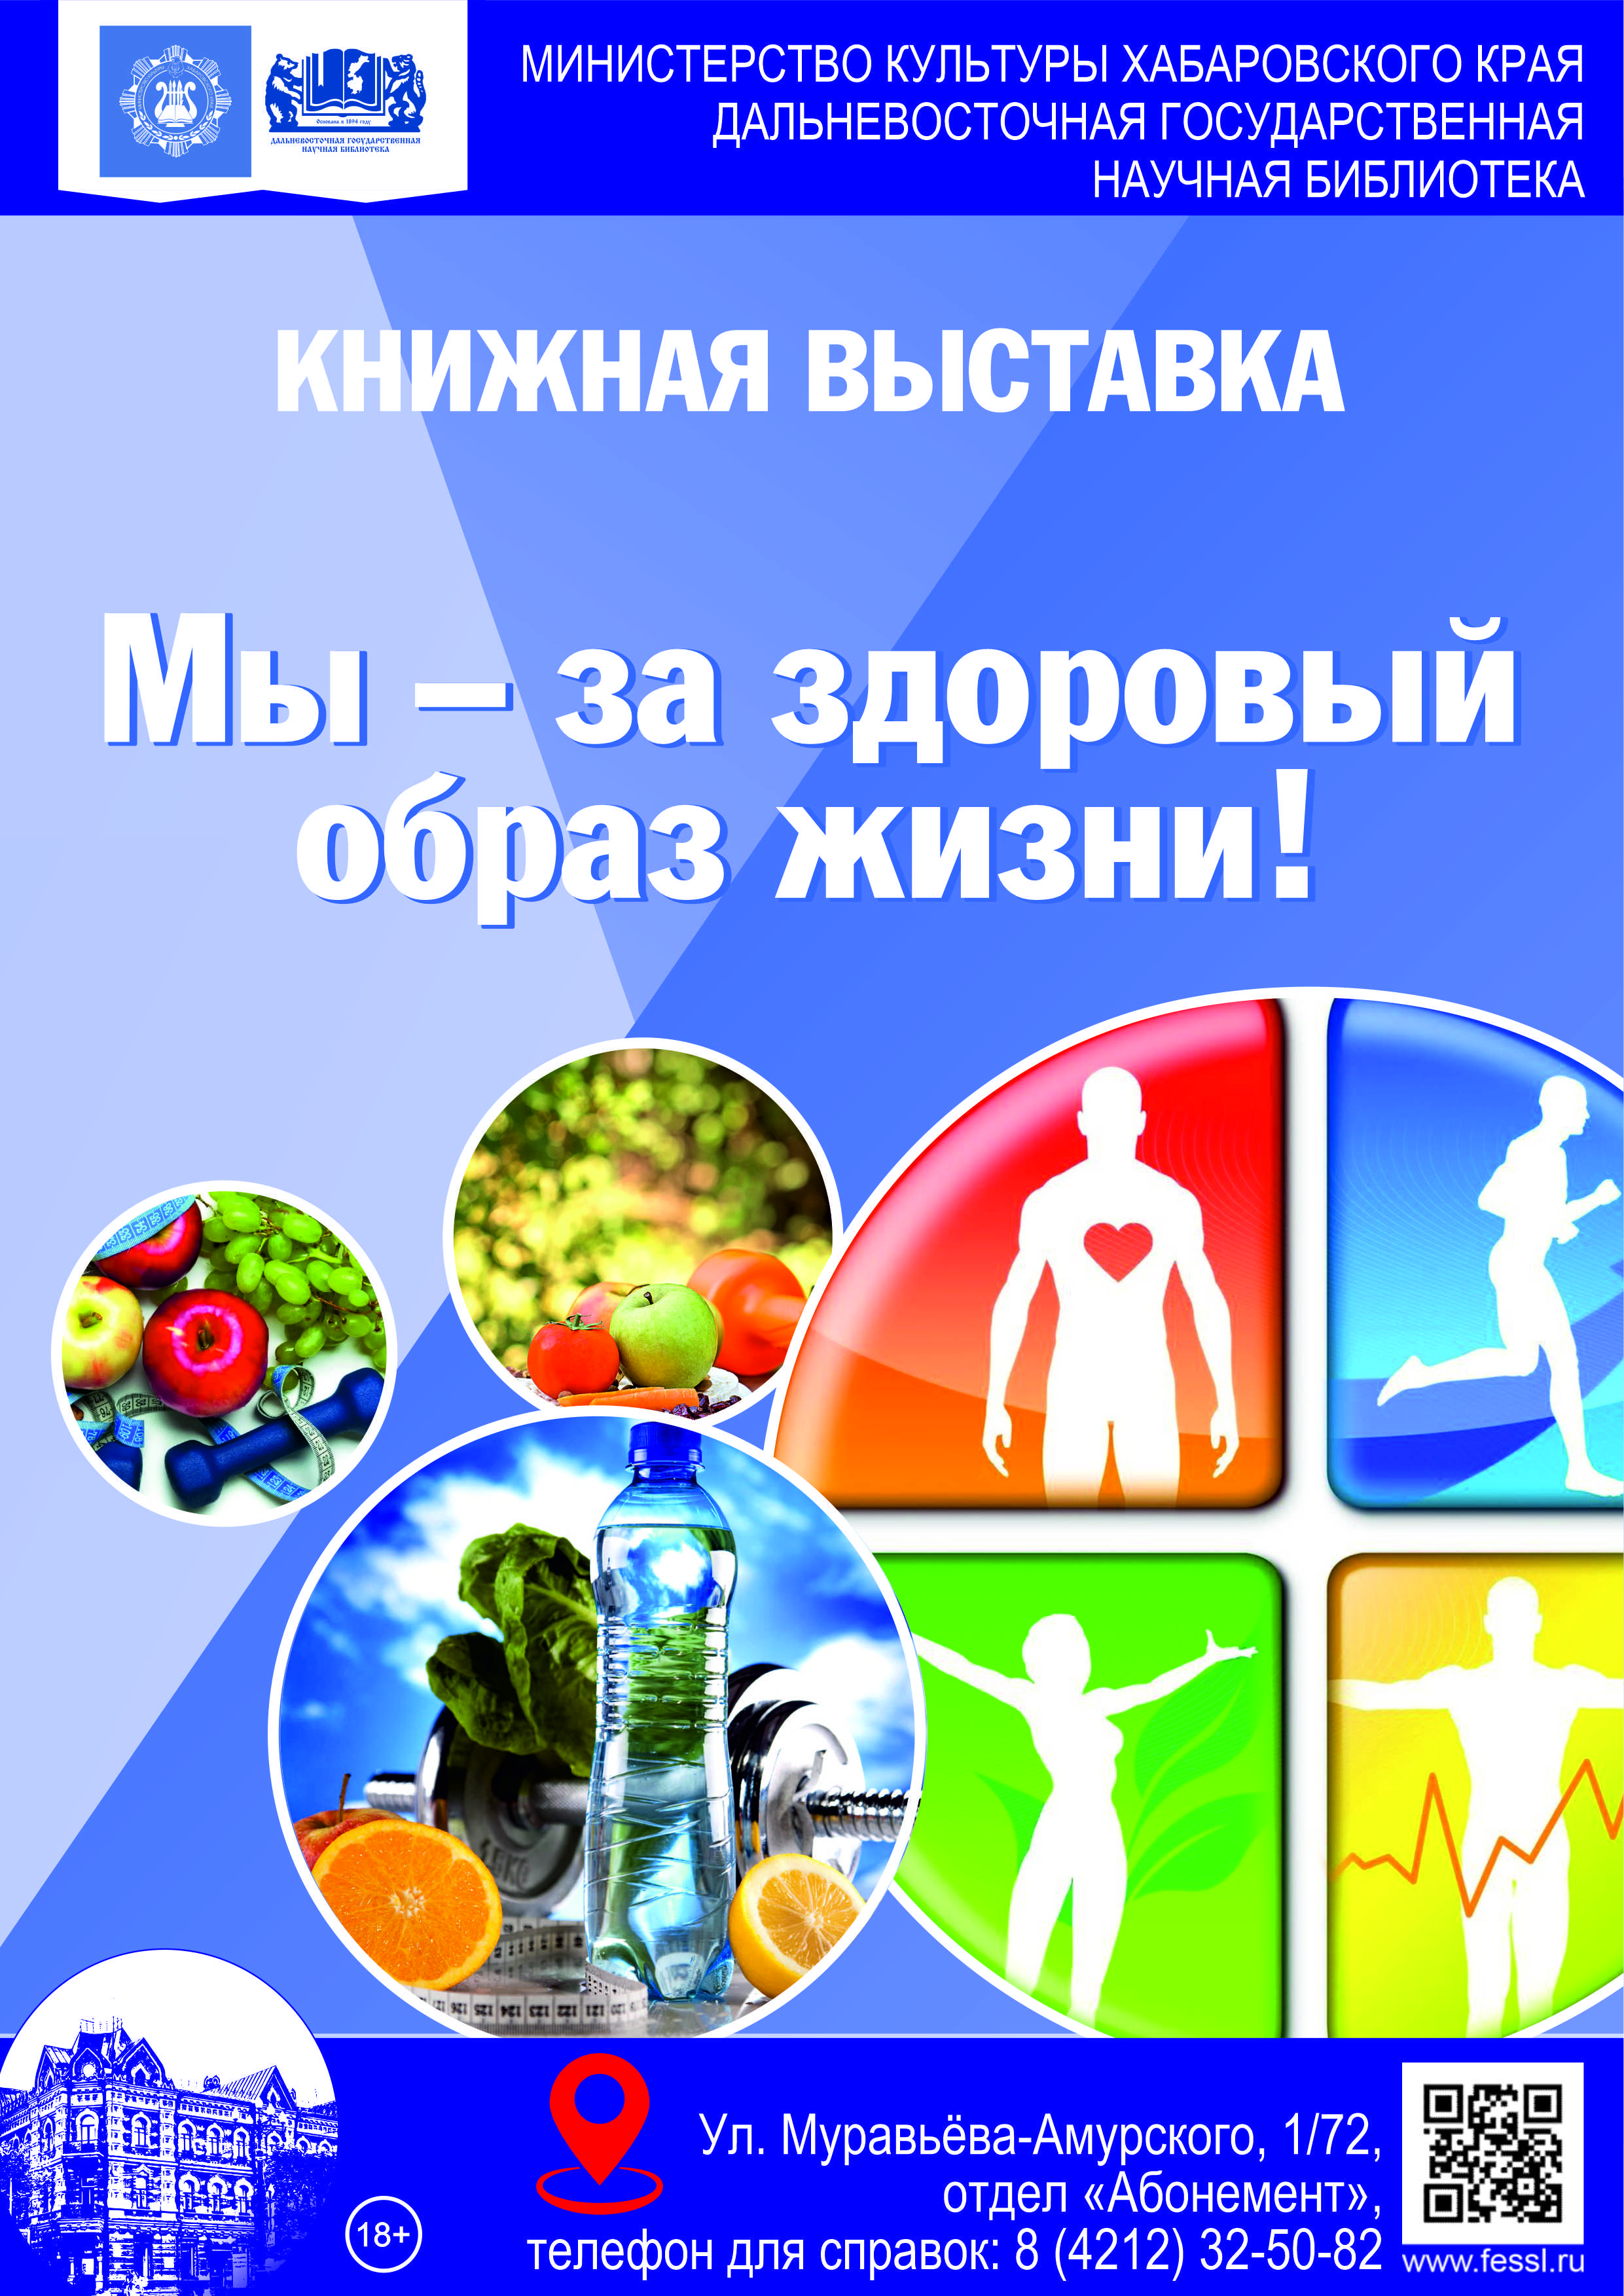 Книжная выставка «Мы — за здоровый образ жизни»